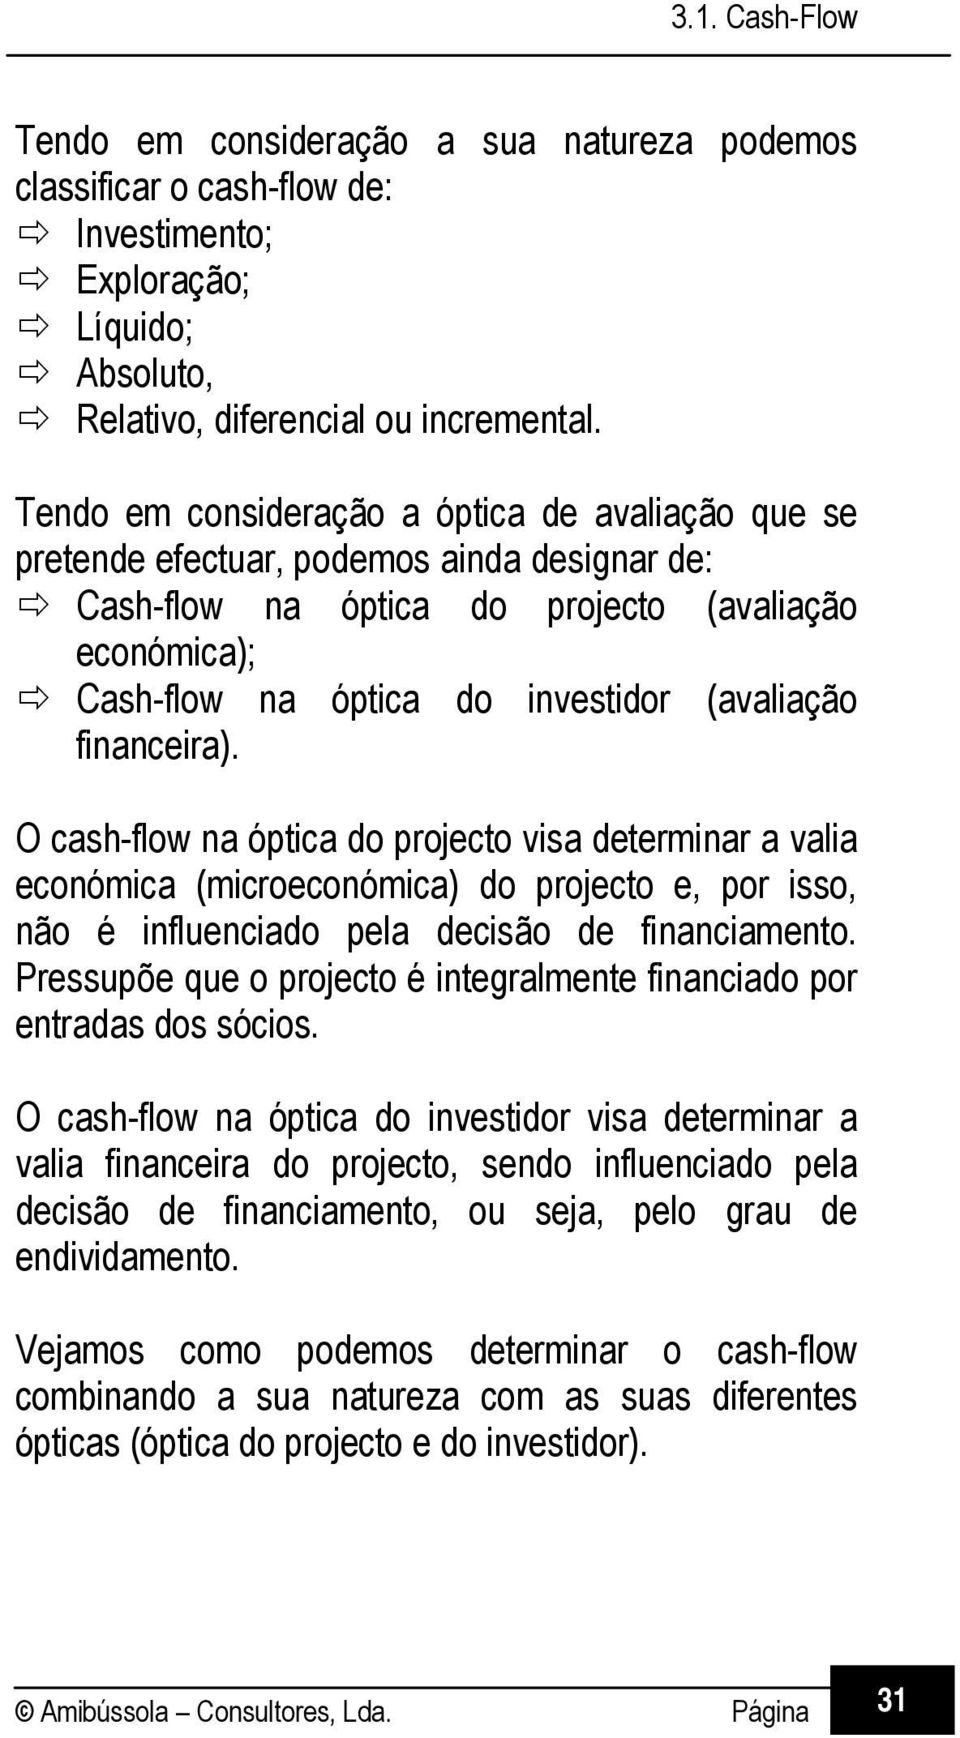 financeira). O cash-flow na óptica do projecto visa determinar a valia económica (microeconómica) do projecto e, por isso, não é influenciado pela decisão de financiamento.